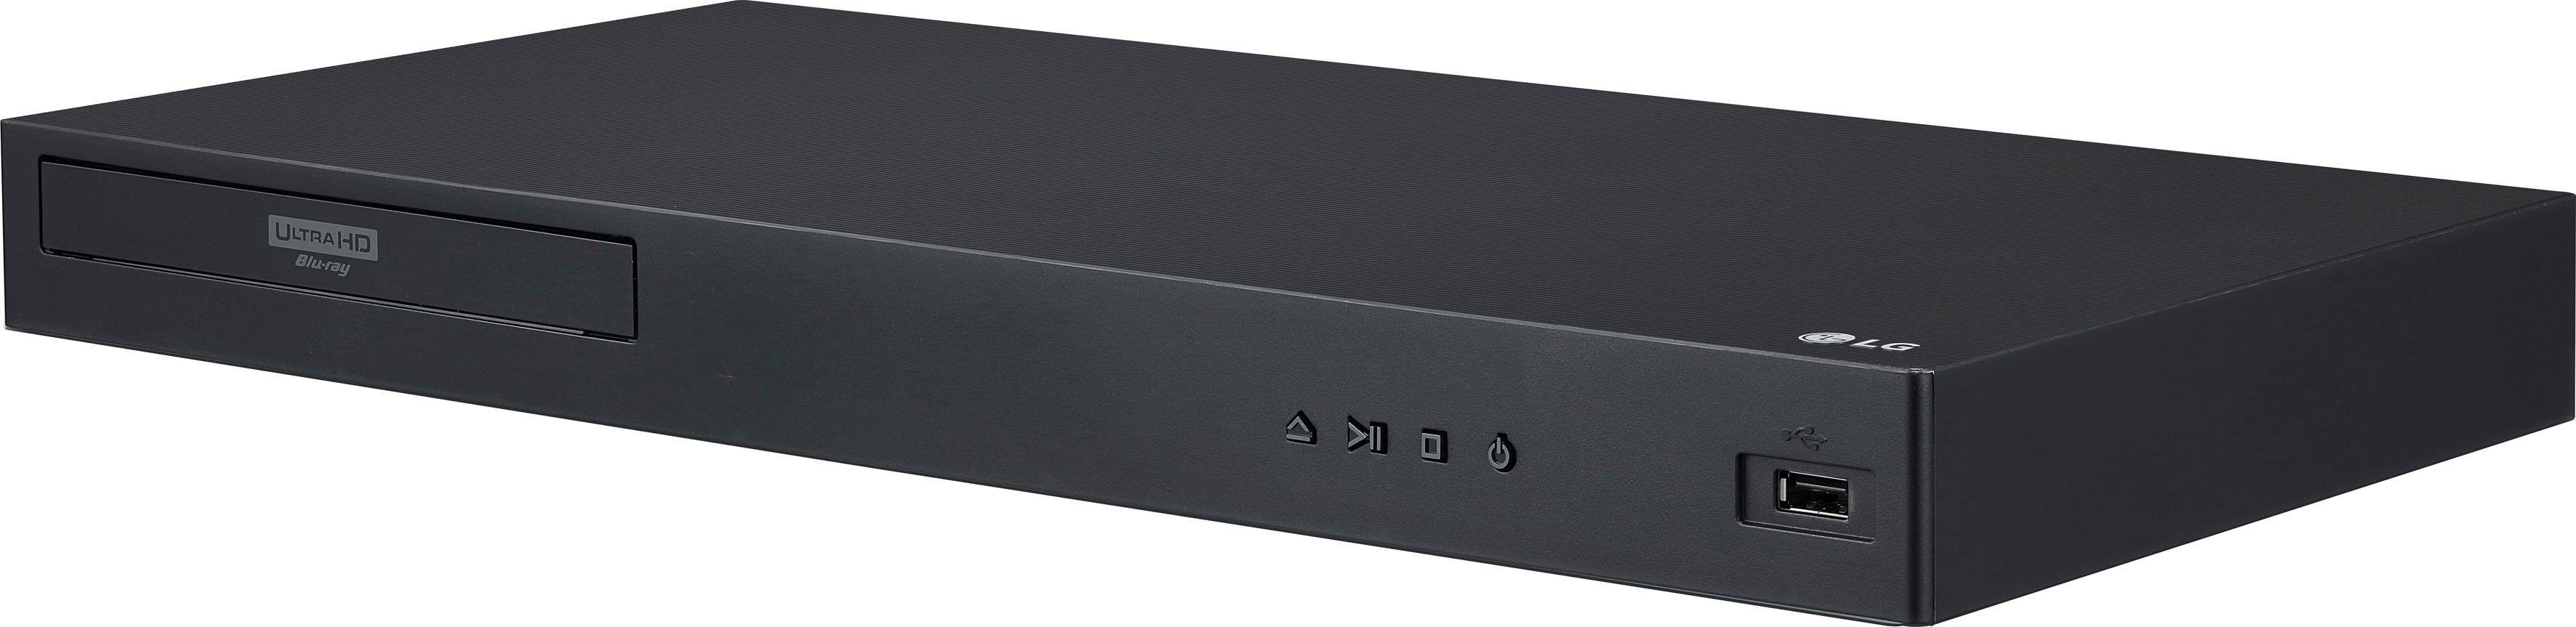 LG UBK90 Blu-ray-Player (4k Ultra HD, WLAN, 4K Upscaling) | Blu-ray-Player